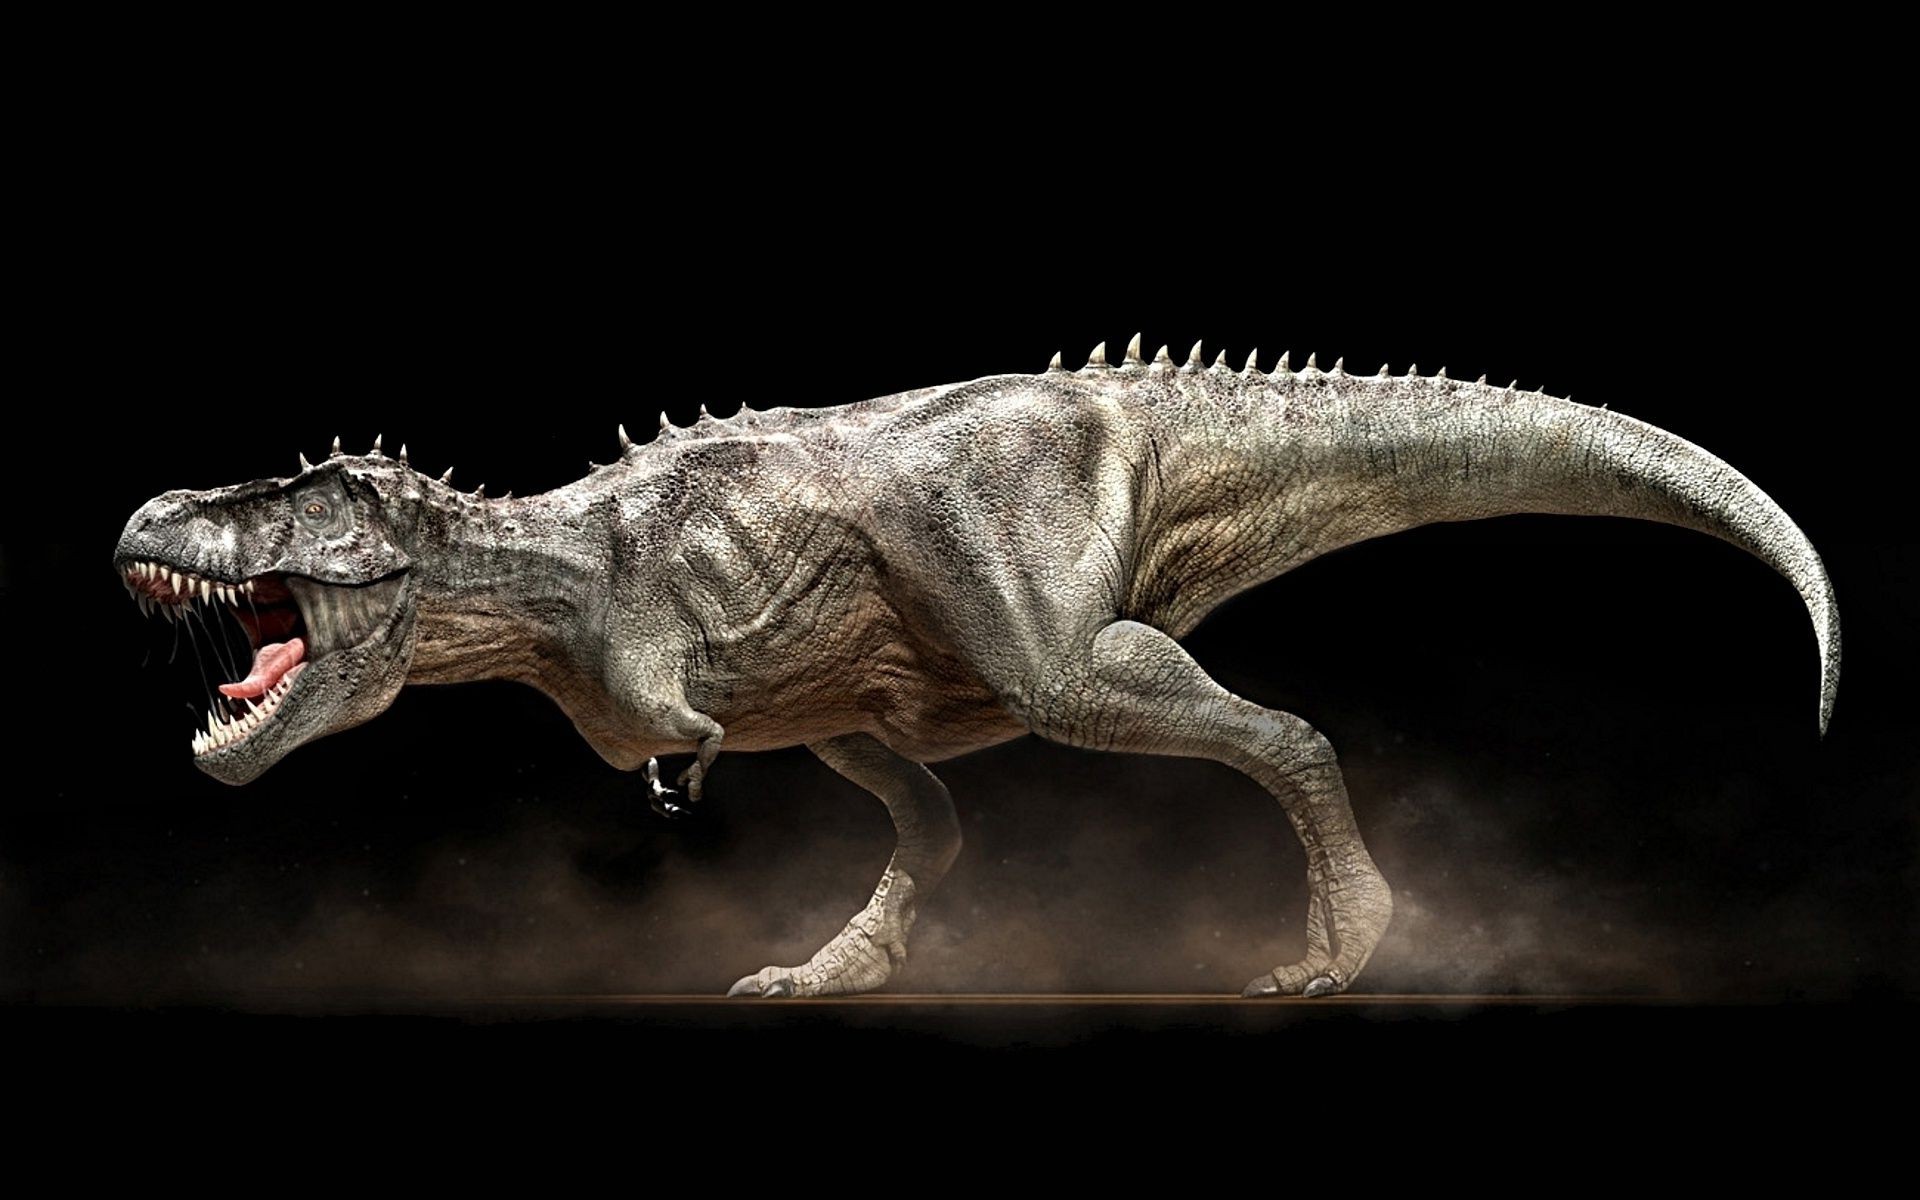 животные гадина динозавр ящерица доисторические монстр палеонтология животное музей вид сбоку юрский дикой природы биология зубы хищник череп рамка страшно агрессии